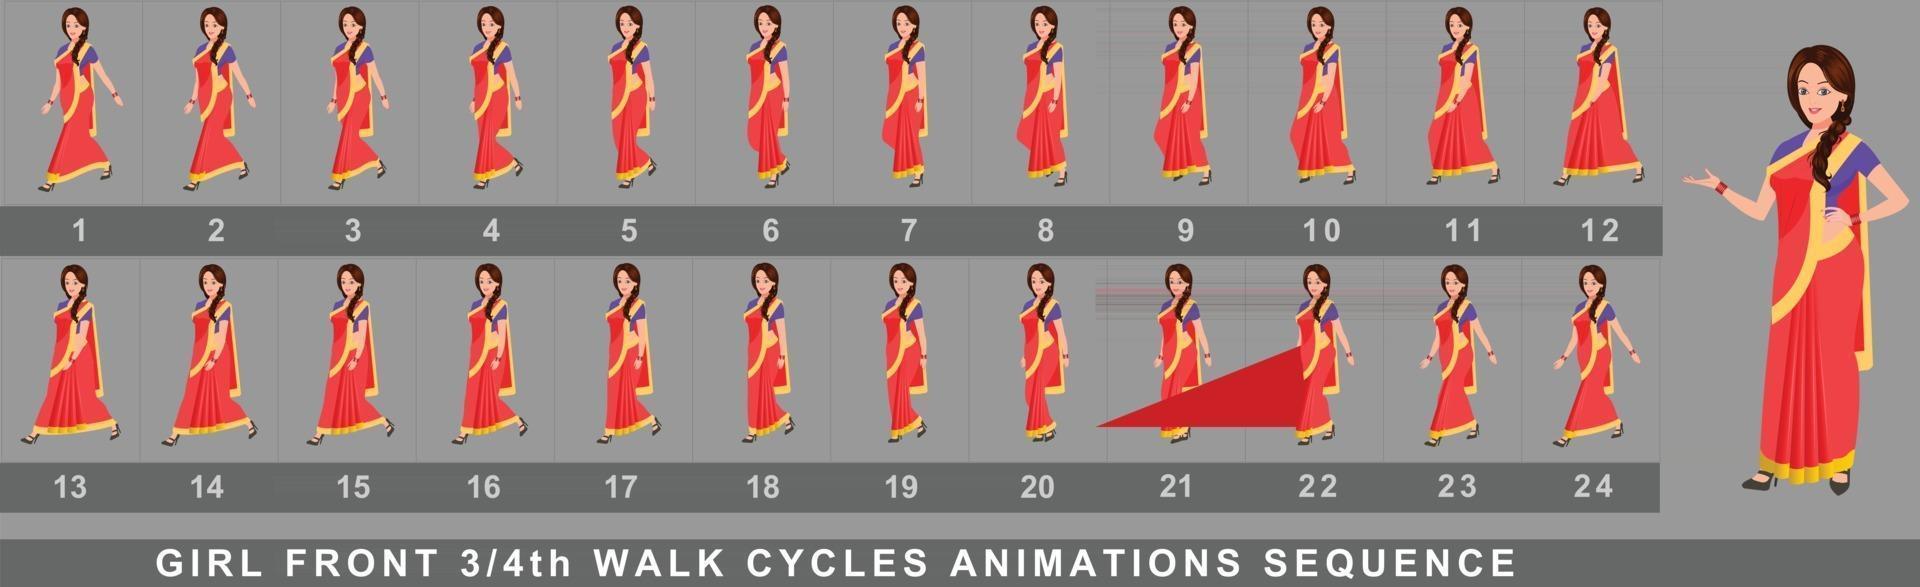 secuencia de animación de ciclo de caminata de personaje de niña vector